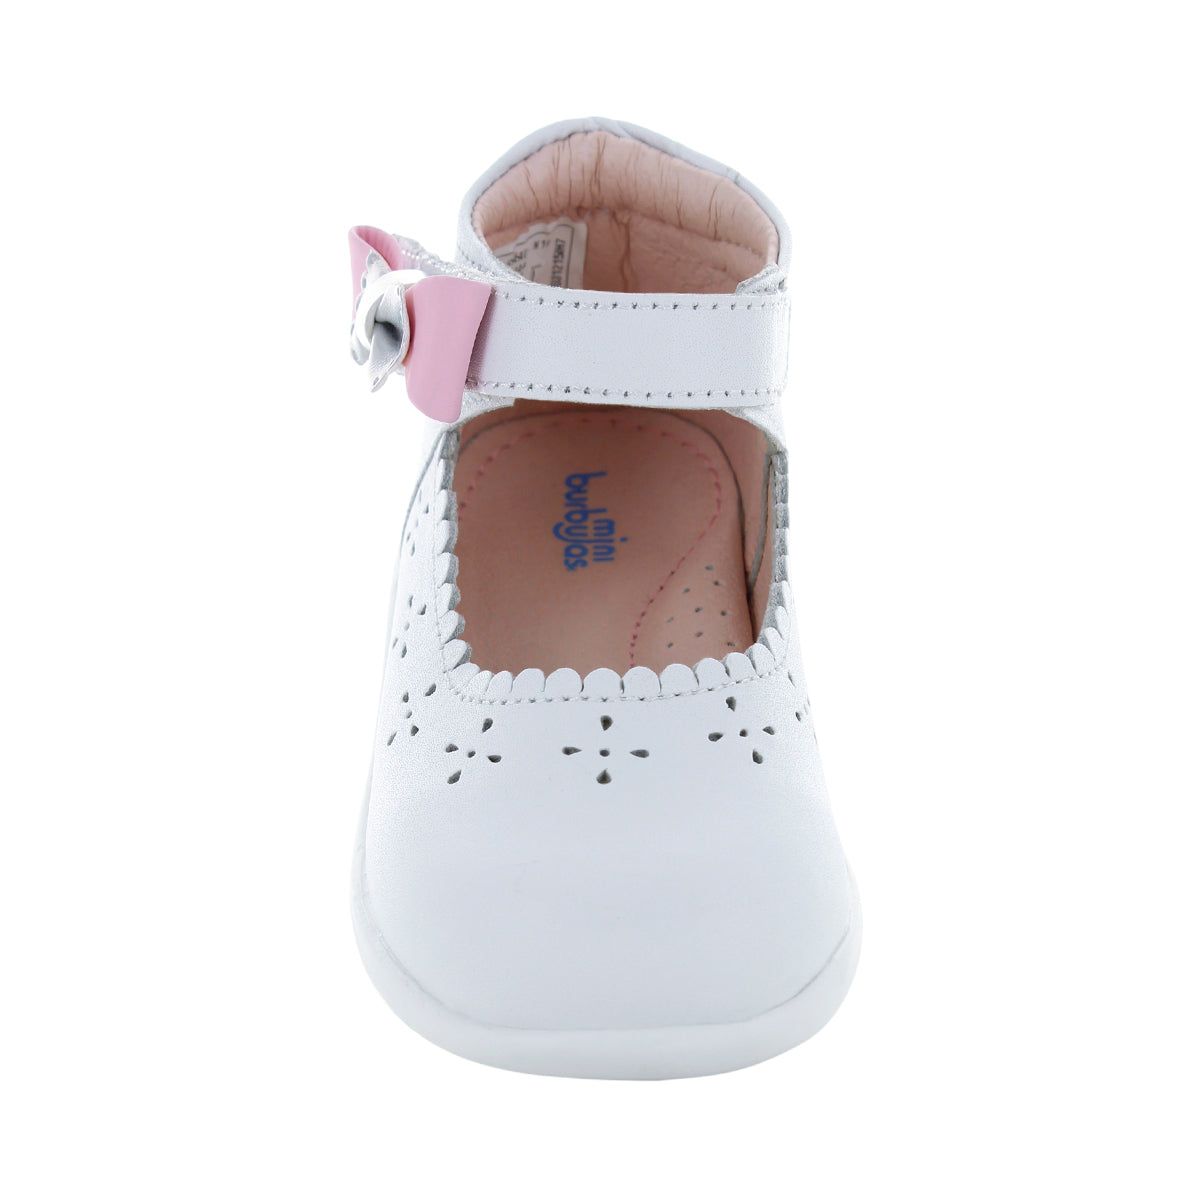 Zapatos Blancos con Primeros Pasos Niña – Mini Burbujas